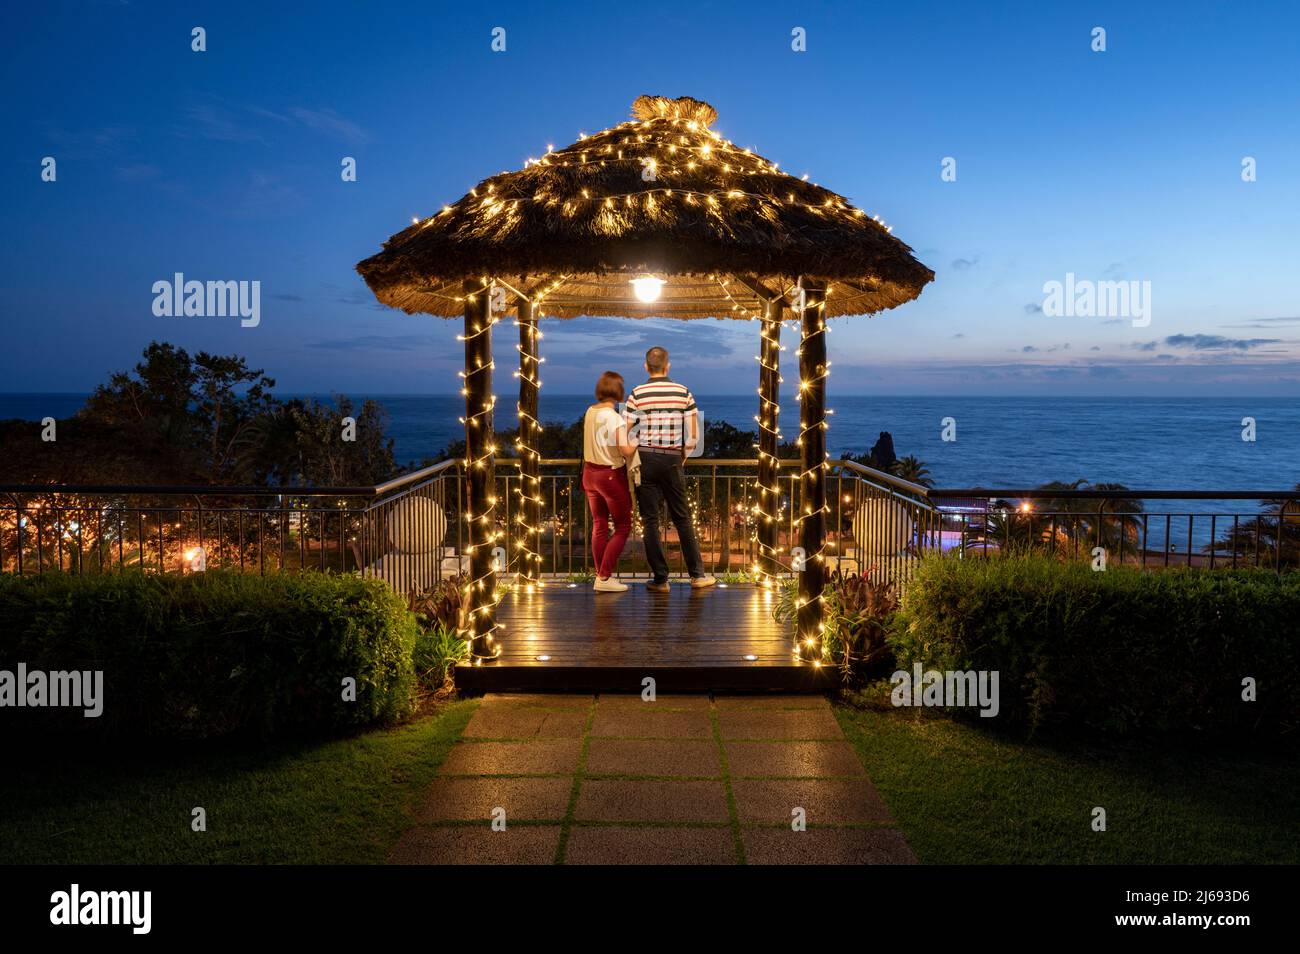 Una pareja se paró mirando el cielo nocturno, Funchal, Madeira, Portugal, Atlántico, Europa Foto de stock